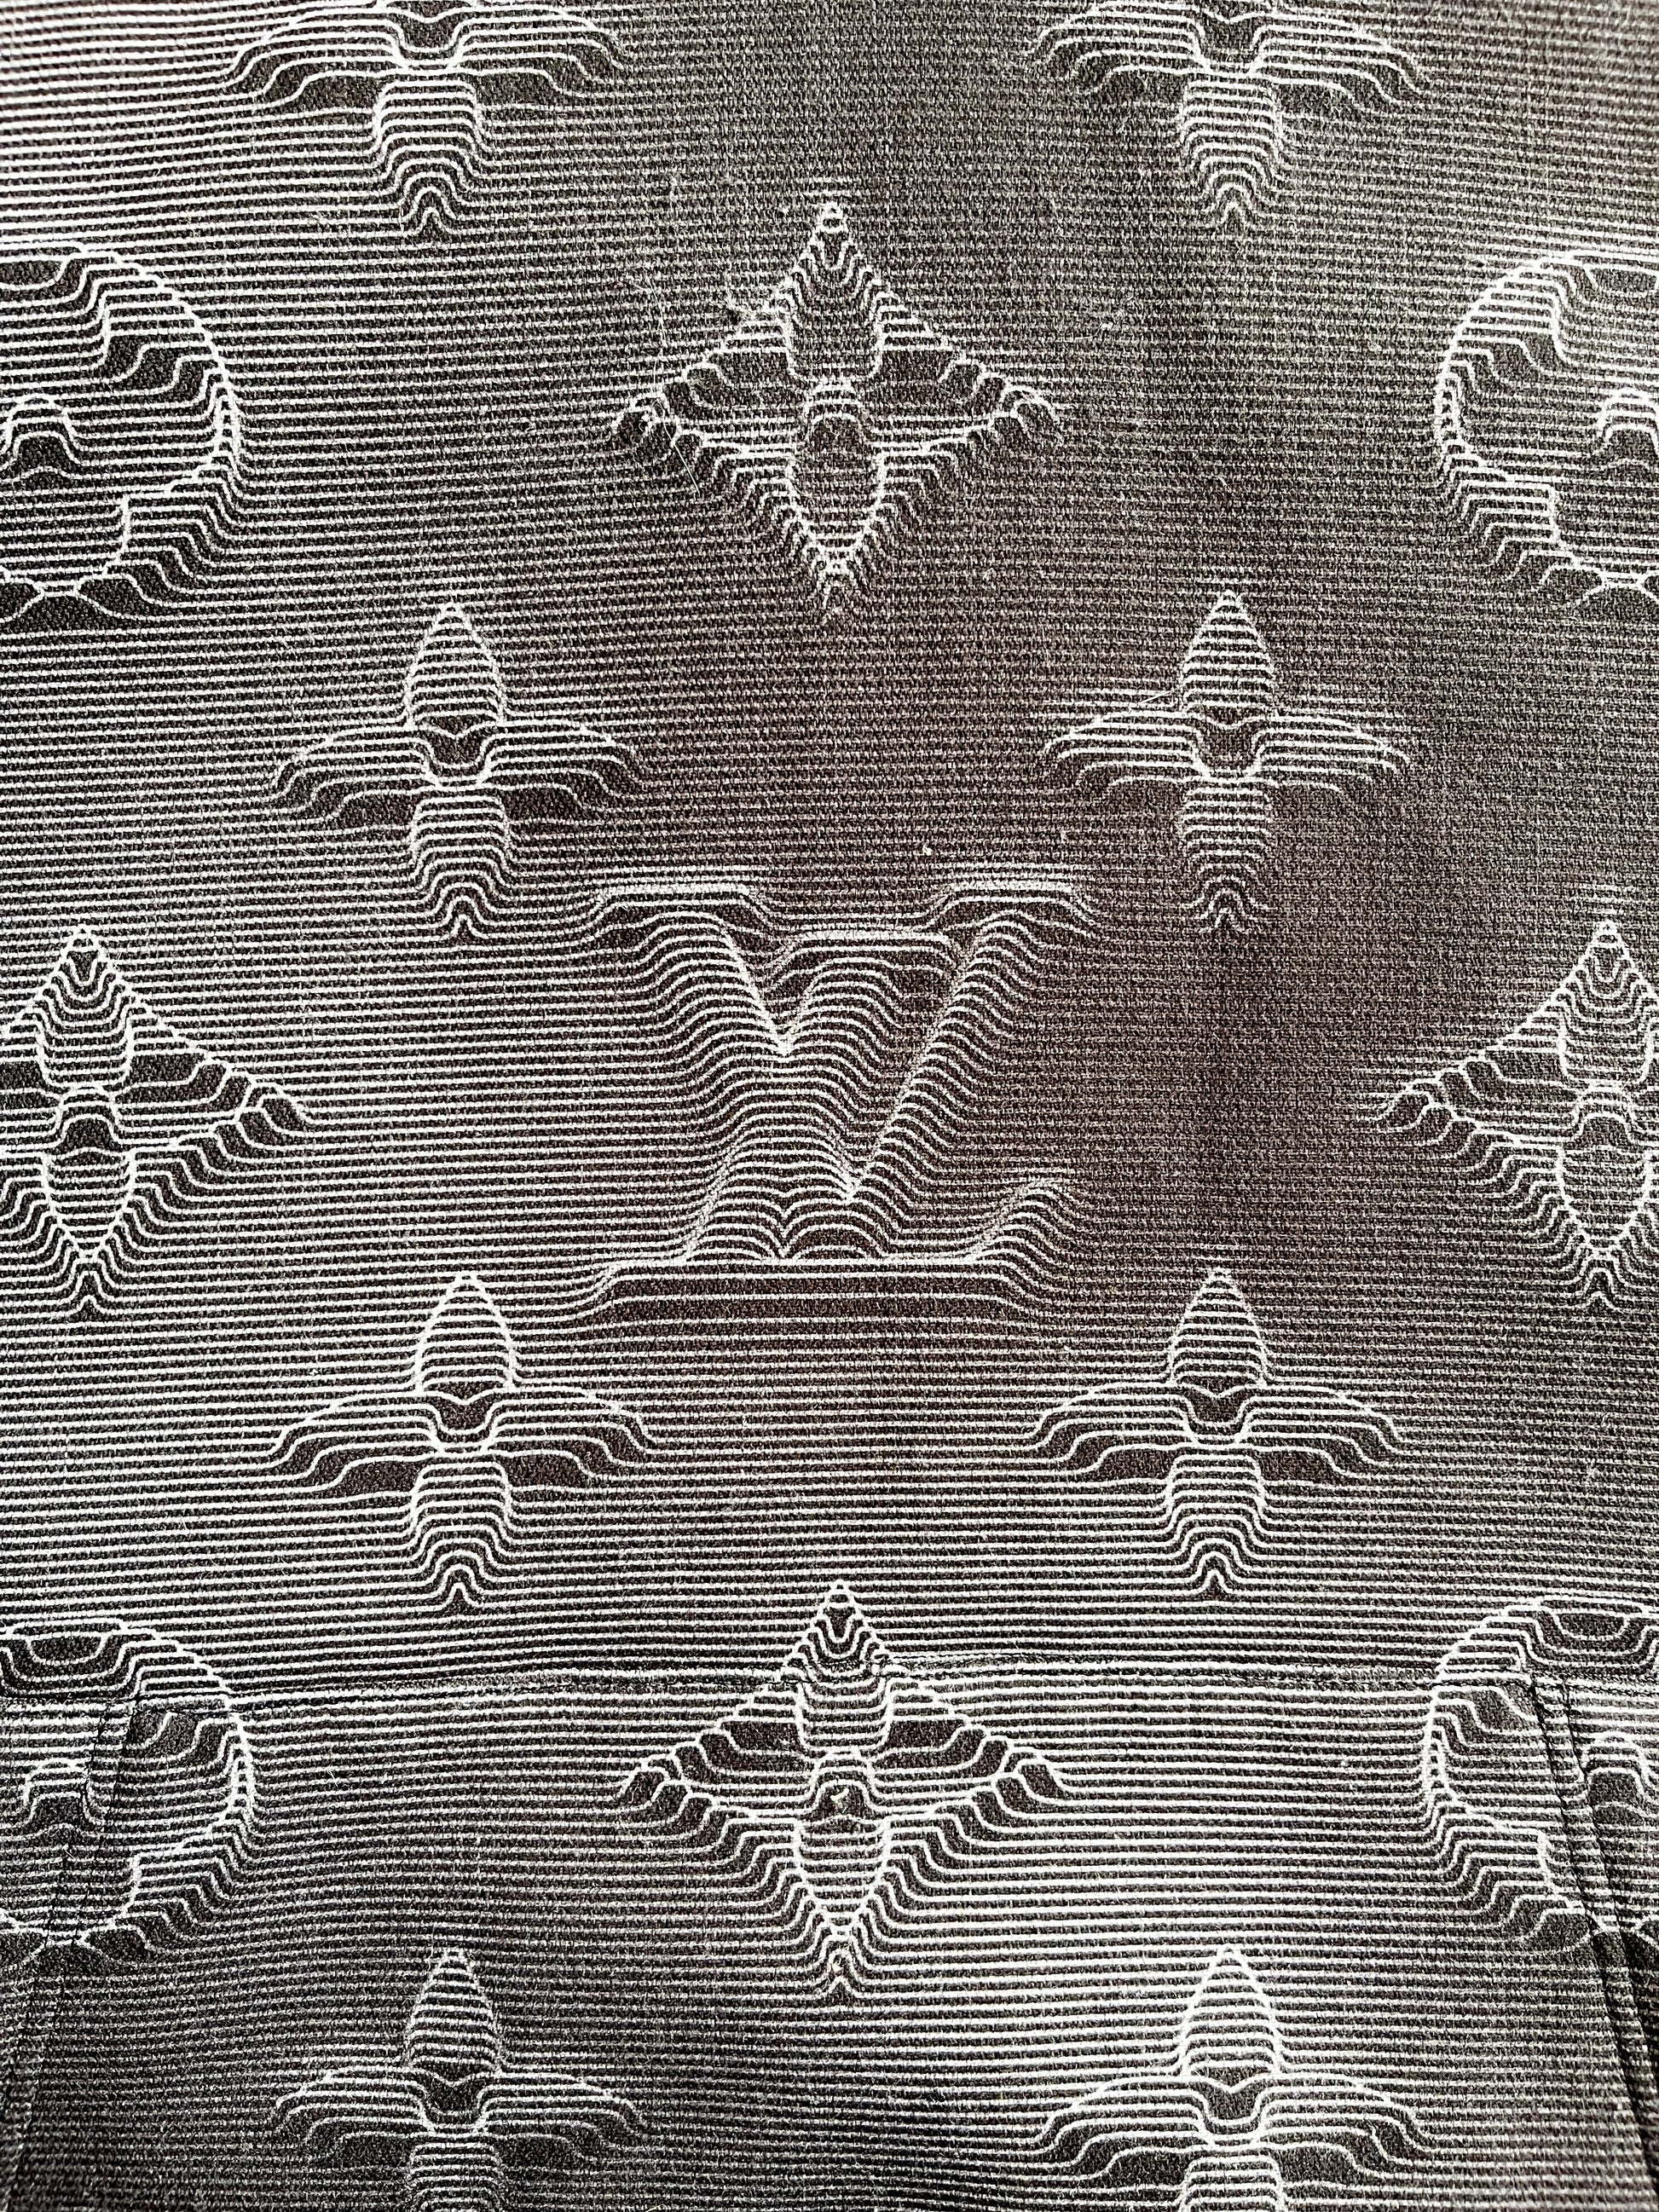 Louis Vuitton 2021 2054 3D Monogram Hoodie - Grey Sweatshirts & Hoodies,  Clothing - LOU640767